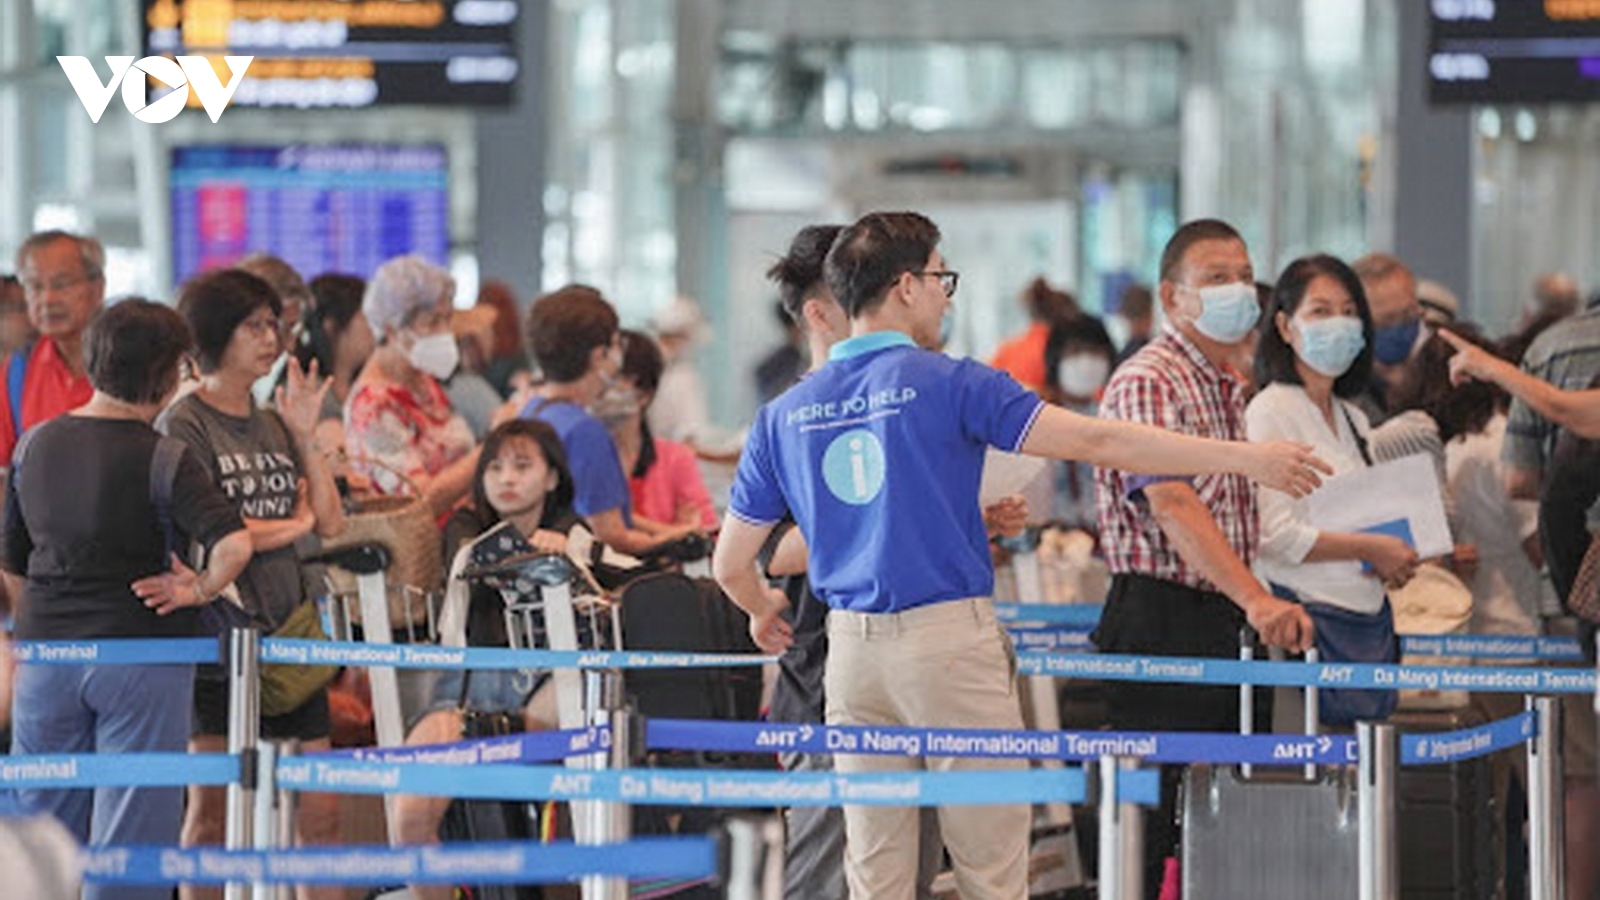 Hạn chế đưa tiễn hành khách tại Nhà ga quốc tế Đà Nẵng để giảm ùn tắc